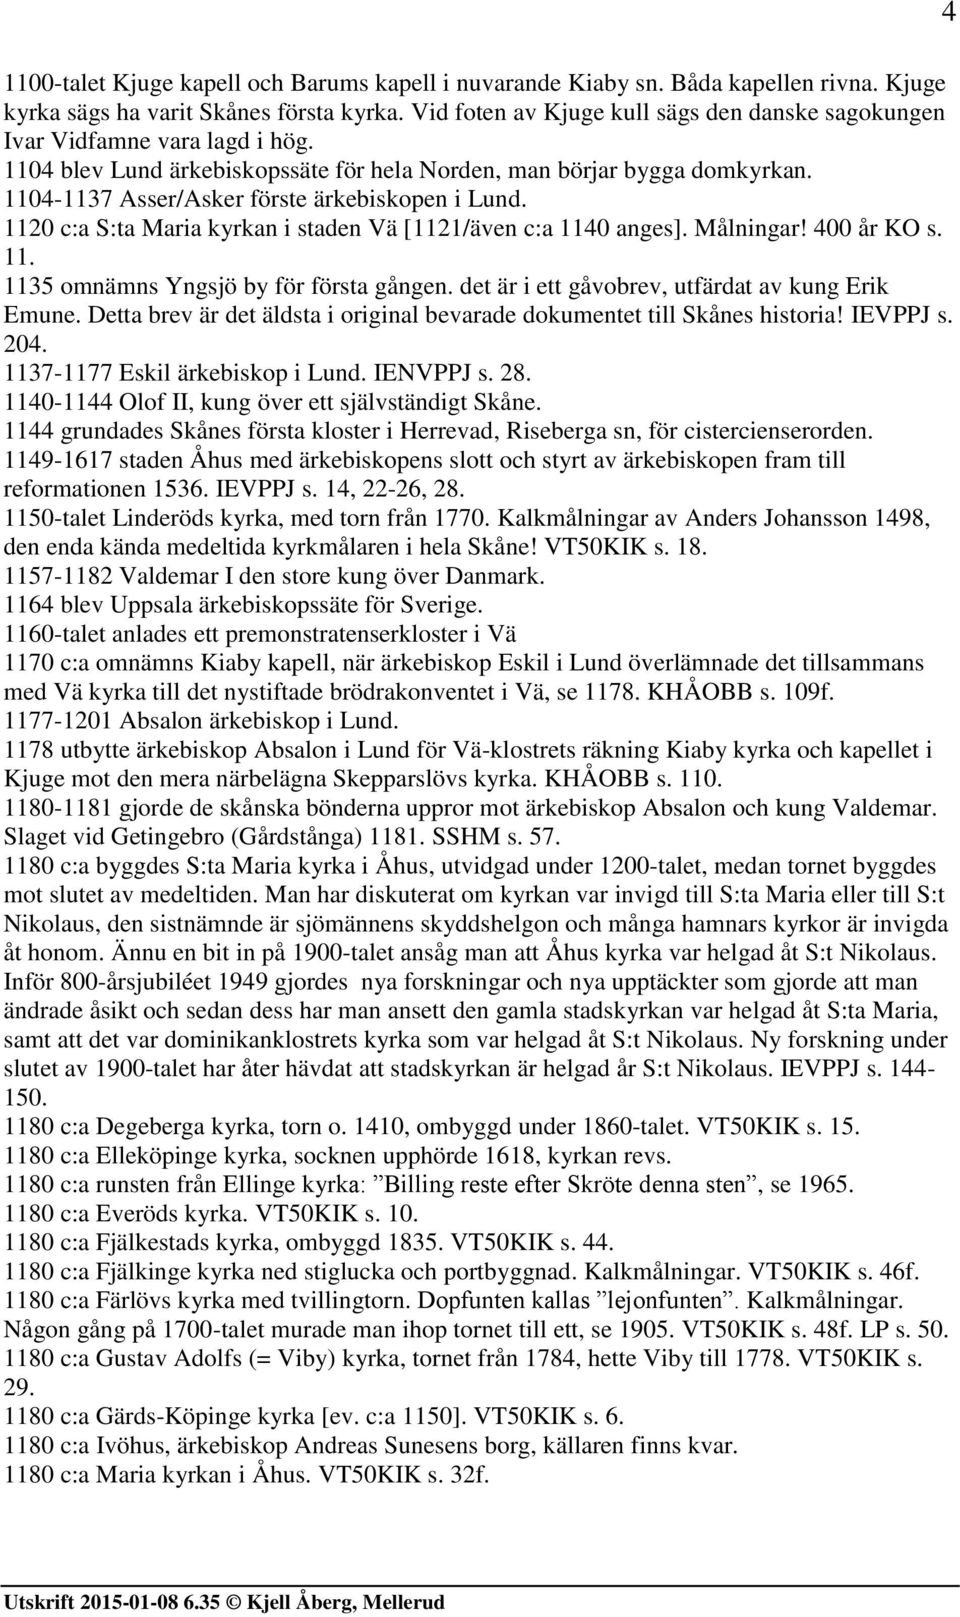 1104-1137 Asser/Asker förste ärkebiskopen i Lund. 1120 c:a S:ta Maria kyrkan i staden Vä [1121/även c:a 1140 anges]. Målningar! 400 år KO s. 11. 1135 omnämns Yngsjö by för första gången.